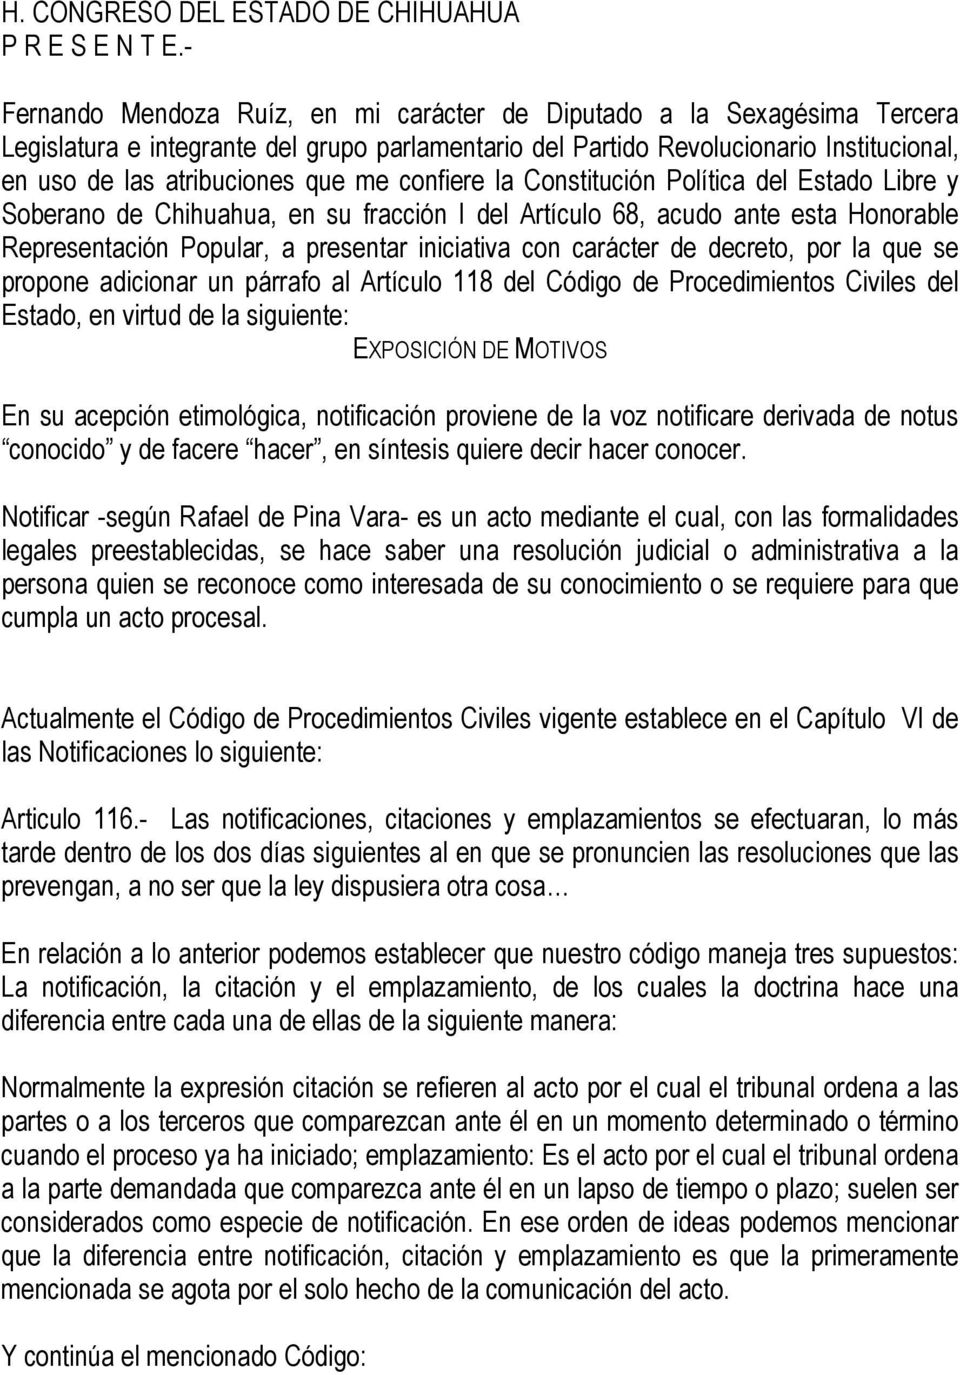 me confiere la Constitución Política del Estado Libre y Soberano de Chihuahua, en su fracción I del Artículo 68, acudo ante esta Honorable Representación Popular, a presentar iniciativa con carácter